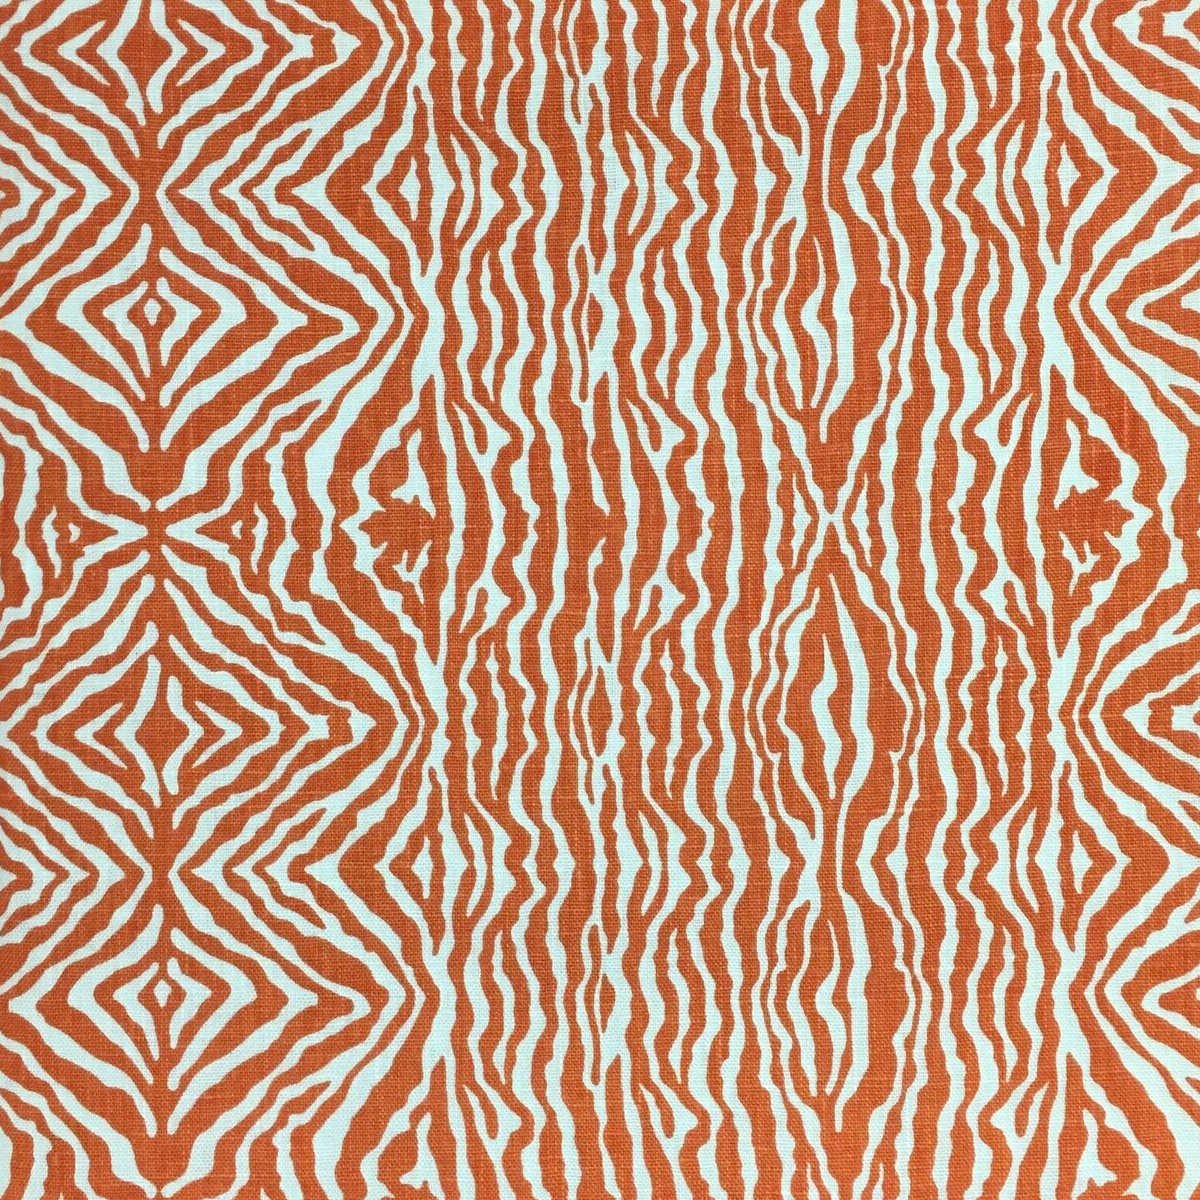 zebrastreifen tapete,muster,orange,linie,muster,design